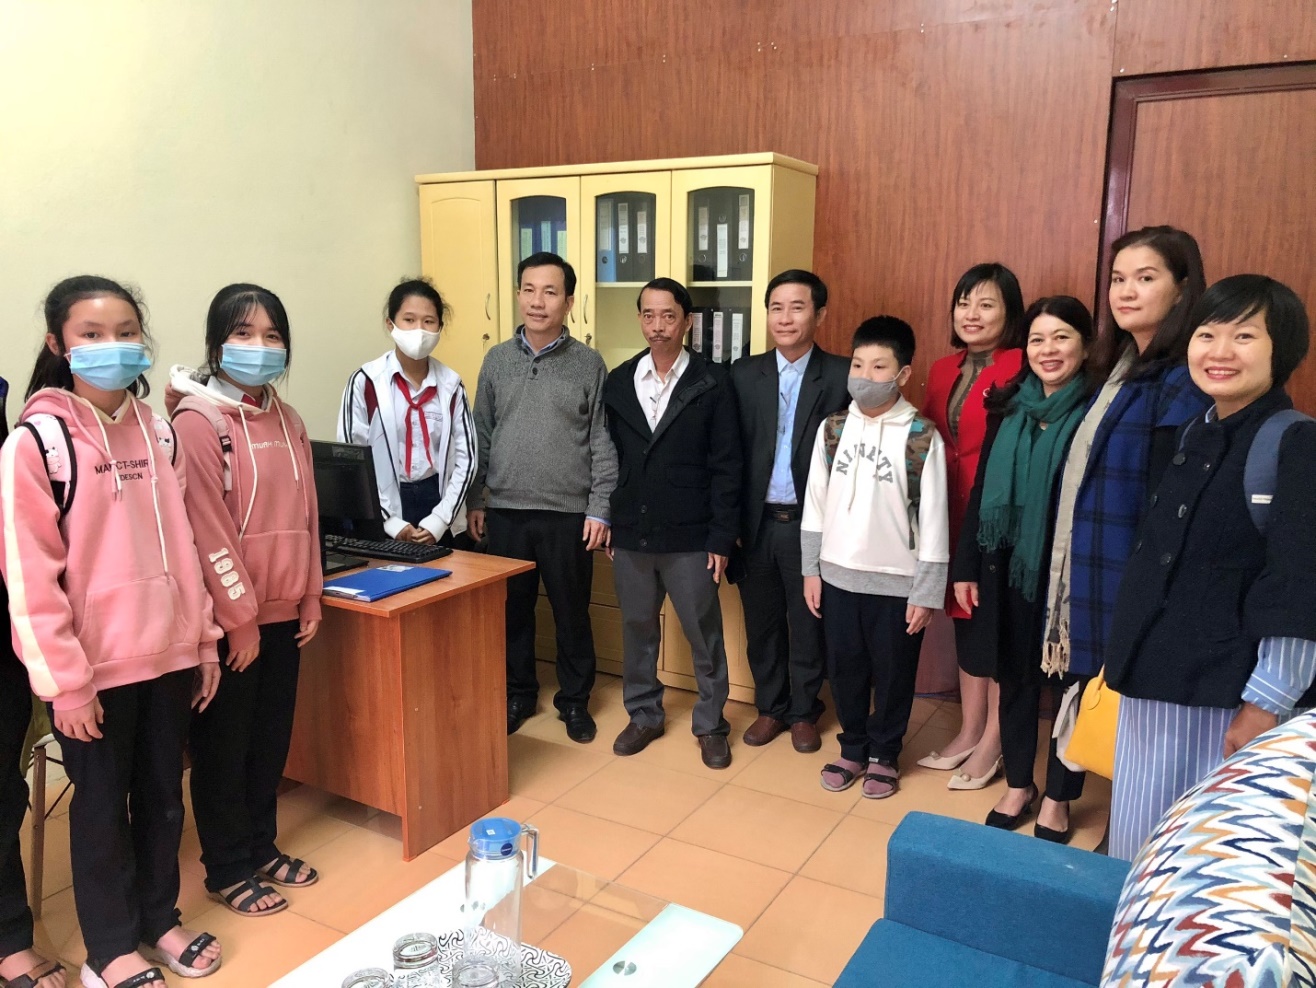 Ra mắt Điểm Công tác xã hội trường học tại Trường THCS Trần Qúy Cáp quận Cẩm Lệ